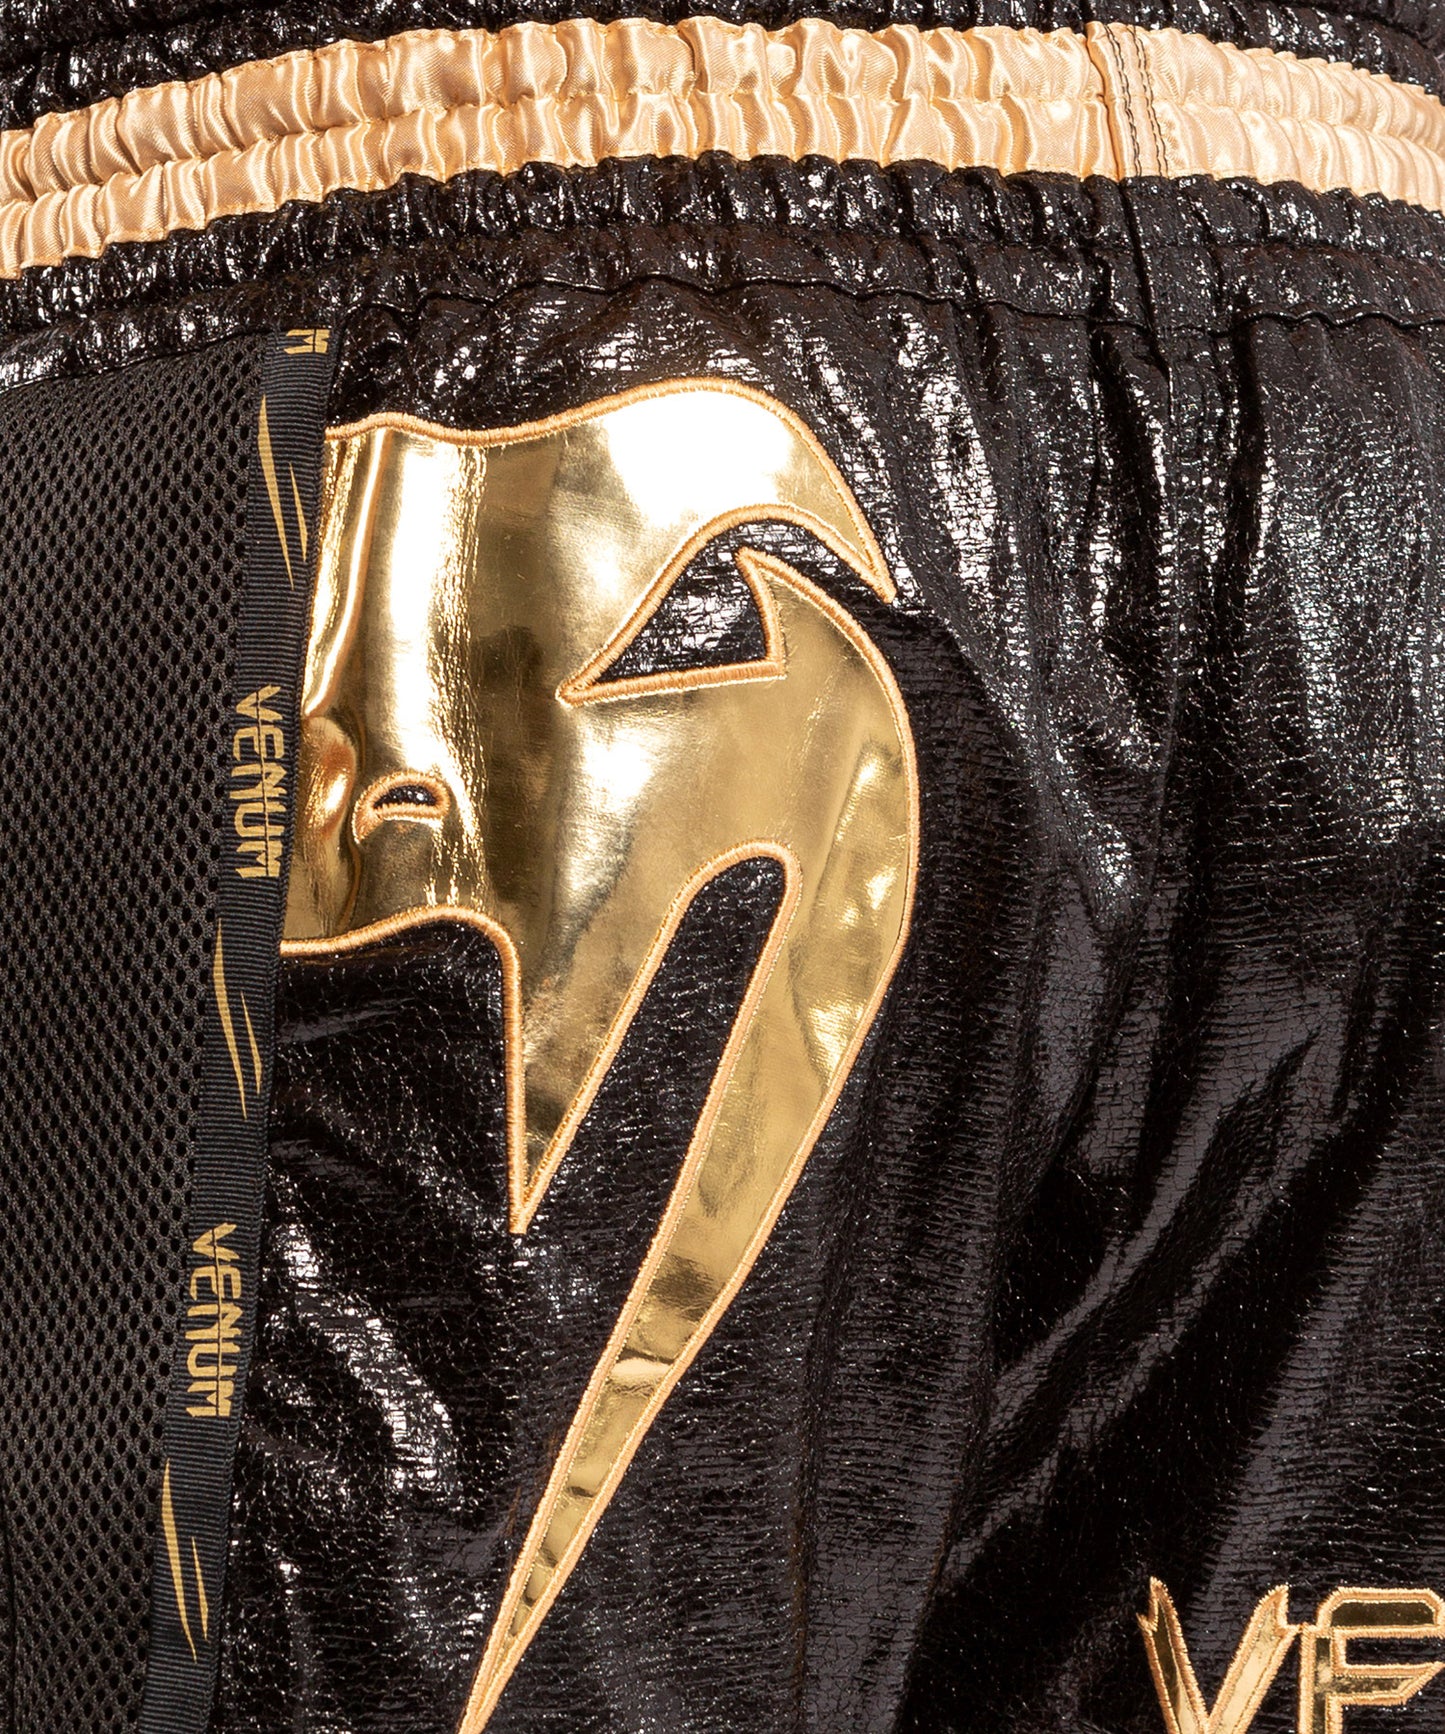 Pantalones de Muay Thai Venum Giant Foil - Negro/Oro – Venum España